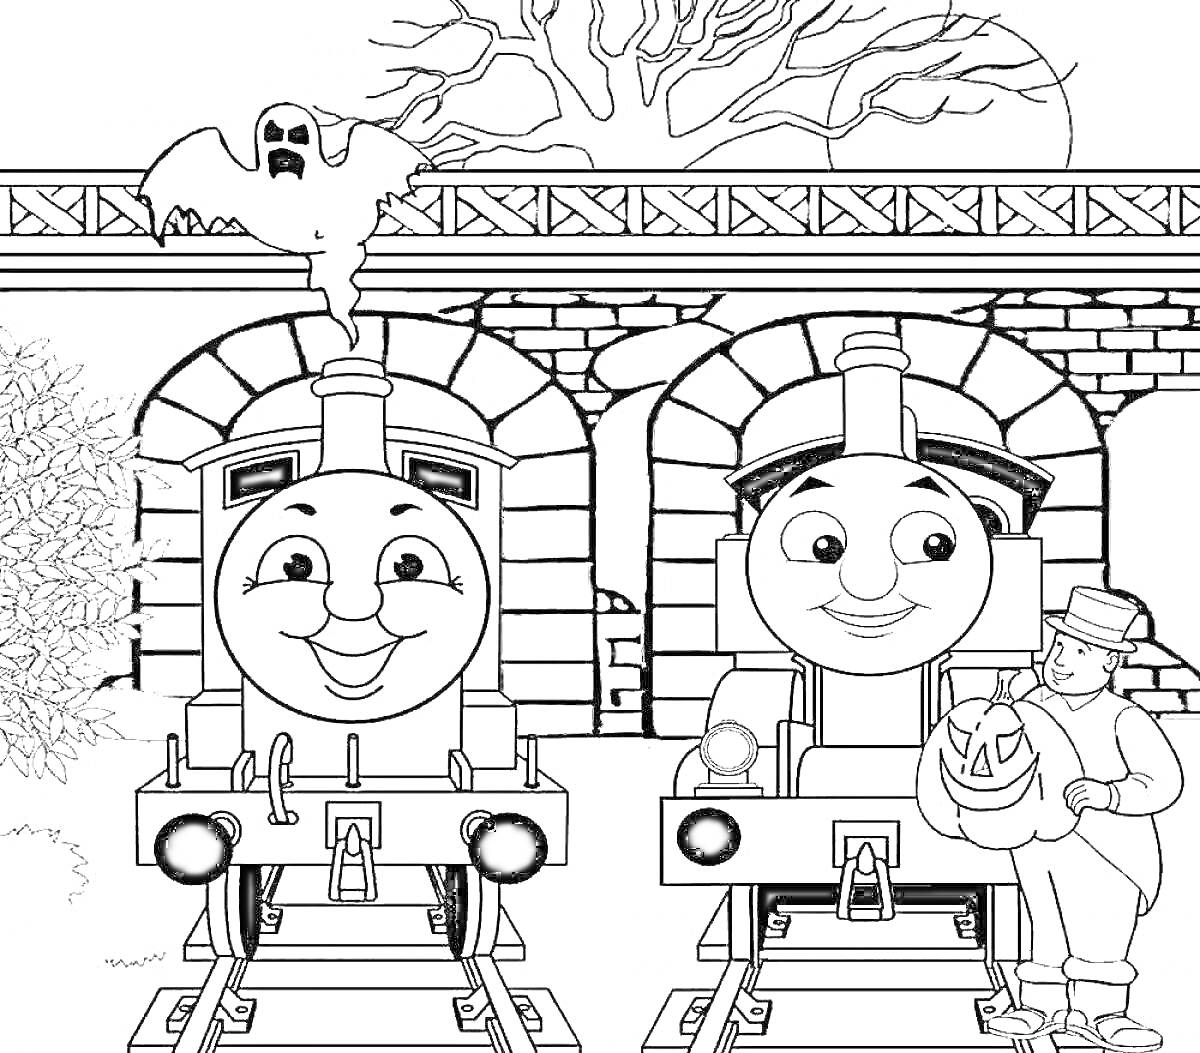 РаскраскаПаровозы Томас и Джеймс на станции, привидение, дерево, человек с тыквой